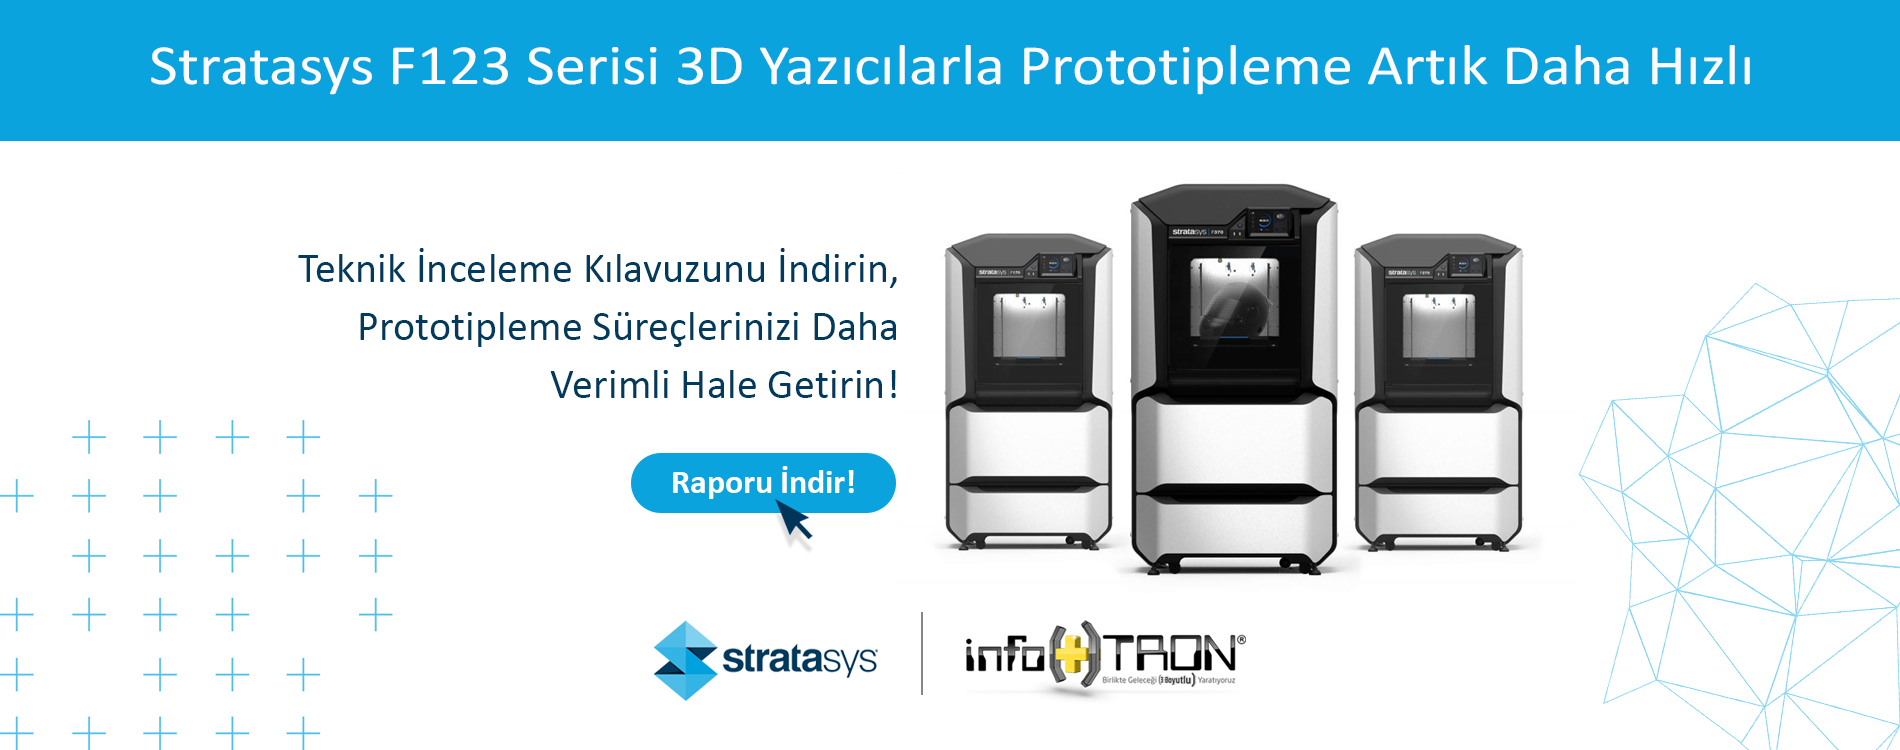 Stratasys F123 Serisi 3D Yazıcılar Hızlı Prototiplemeyi Nasıl Daha Erişilebilir ve Verimli Hale Getirir?